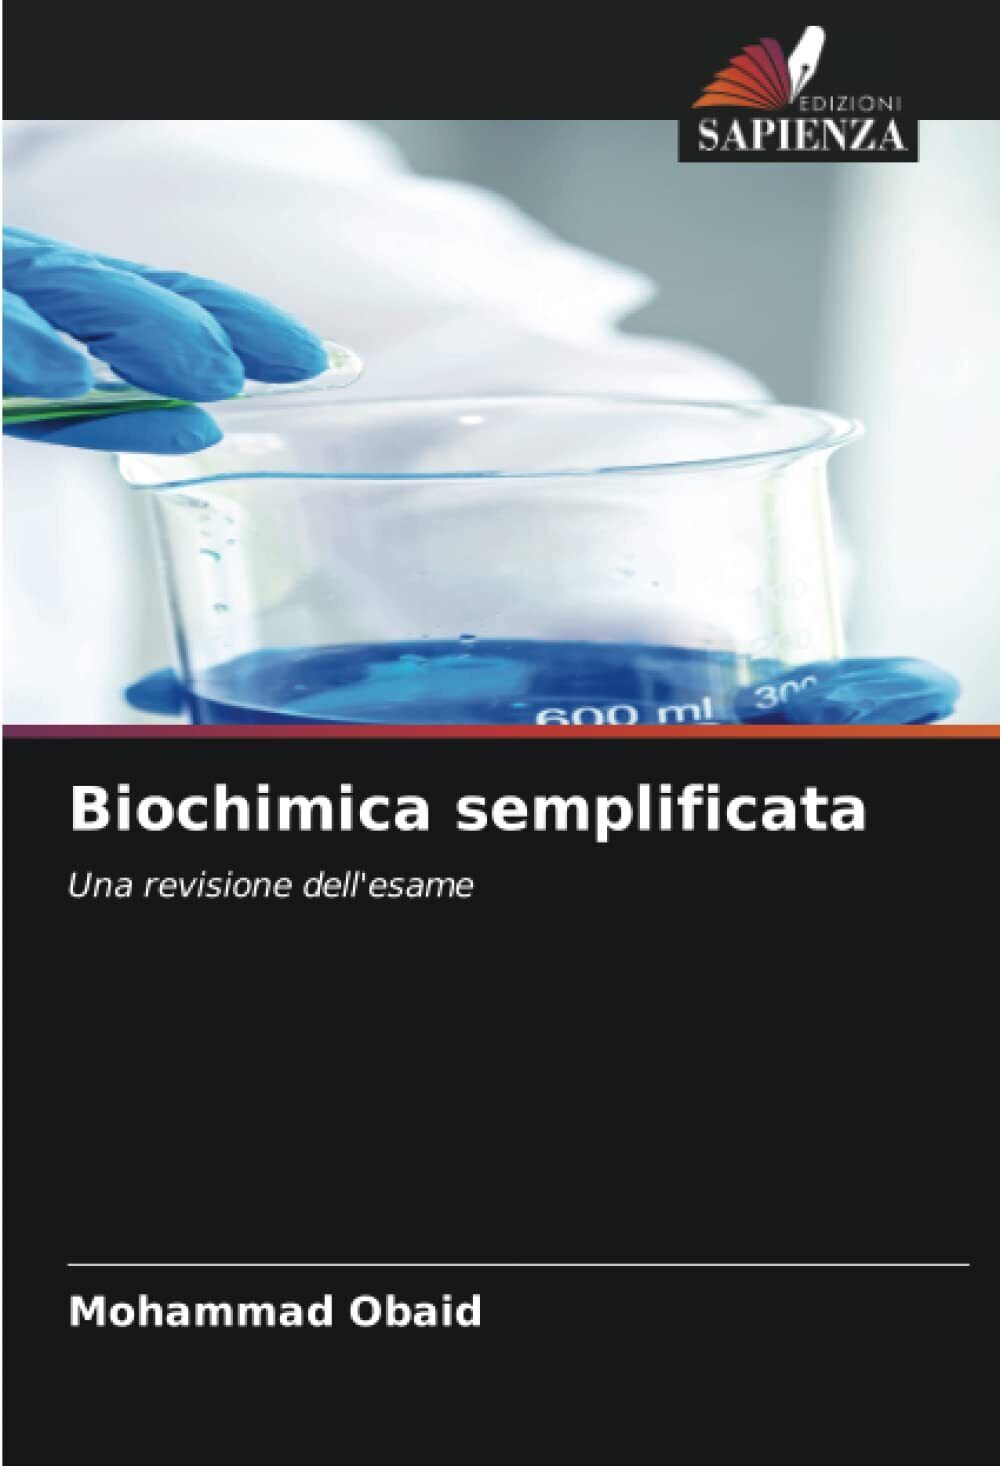 Biochimica semplificata - Mohammad Obaid - Edizioni Sapienza, 2022